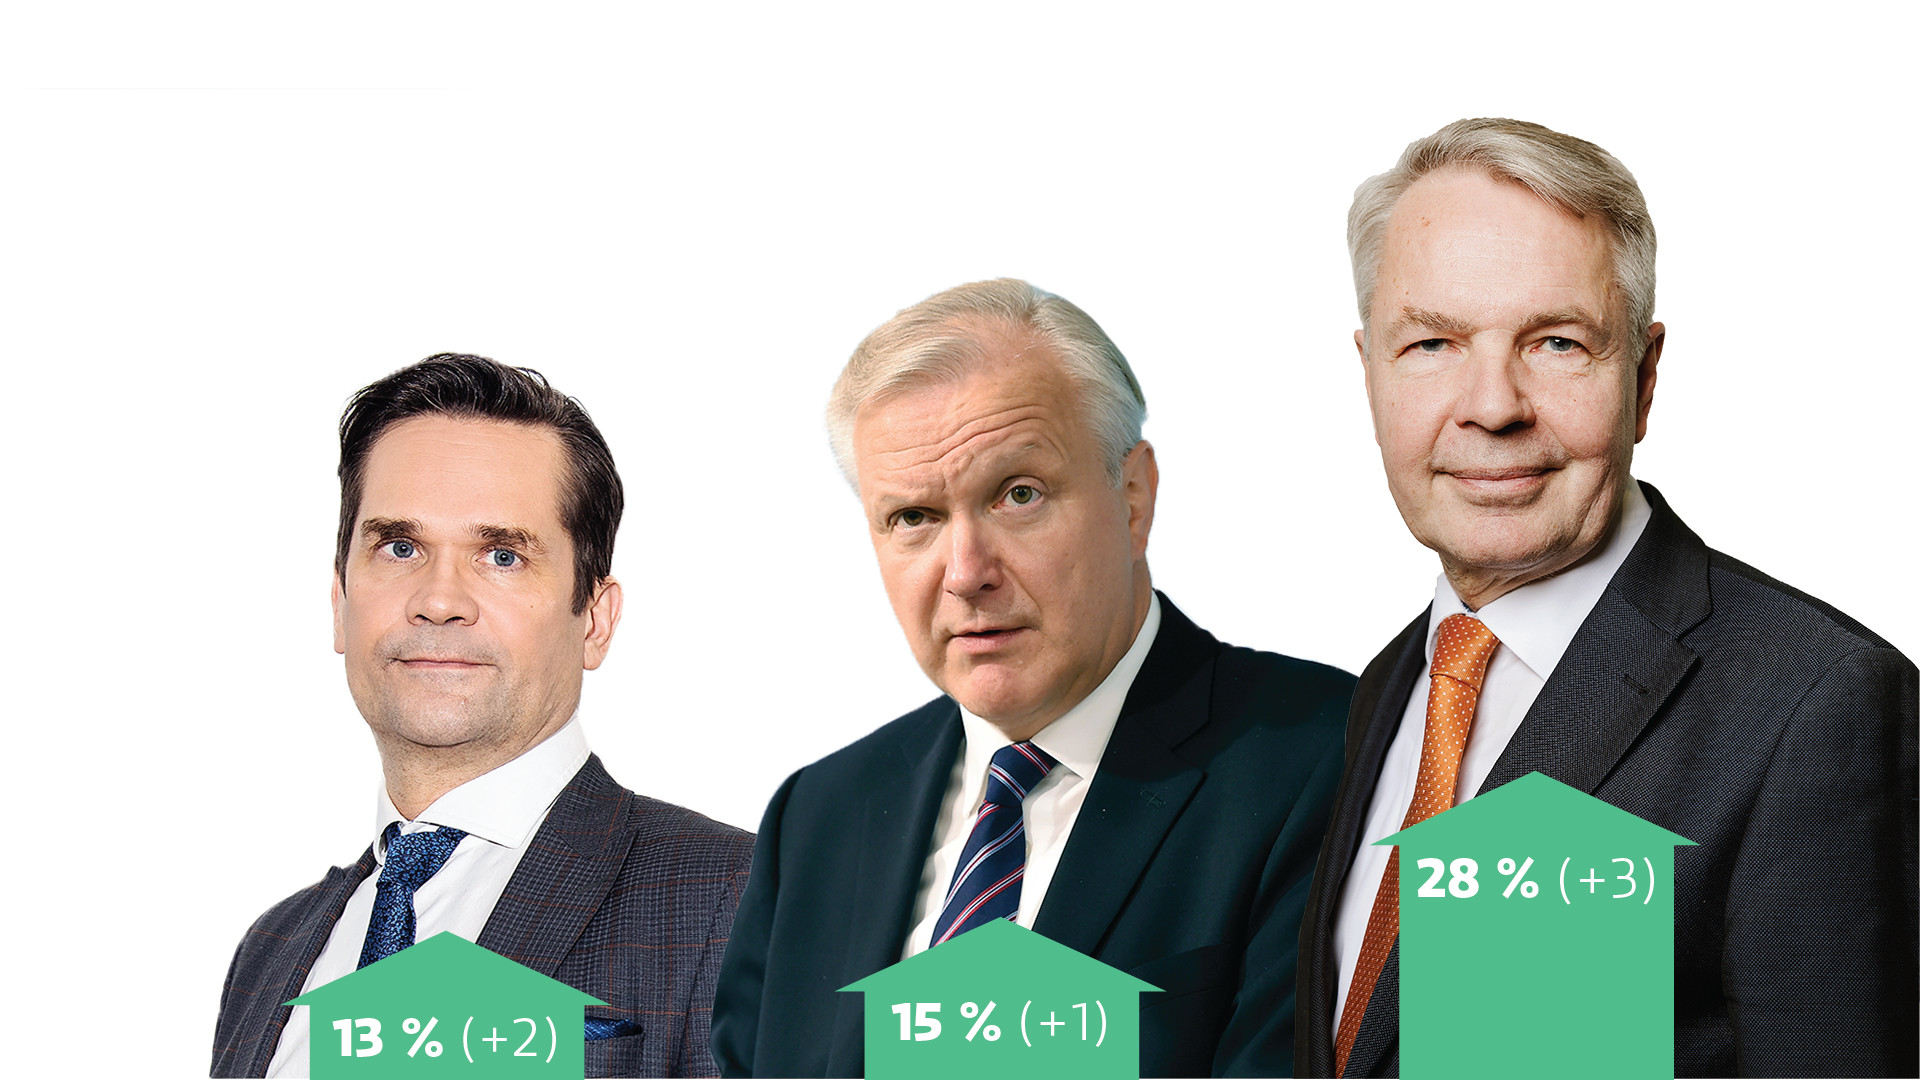 Pekka Haavisto hat bei der jüngsten Präsidentschaftswahl in Yle einen starken Vorsprung